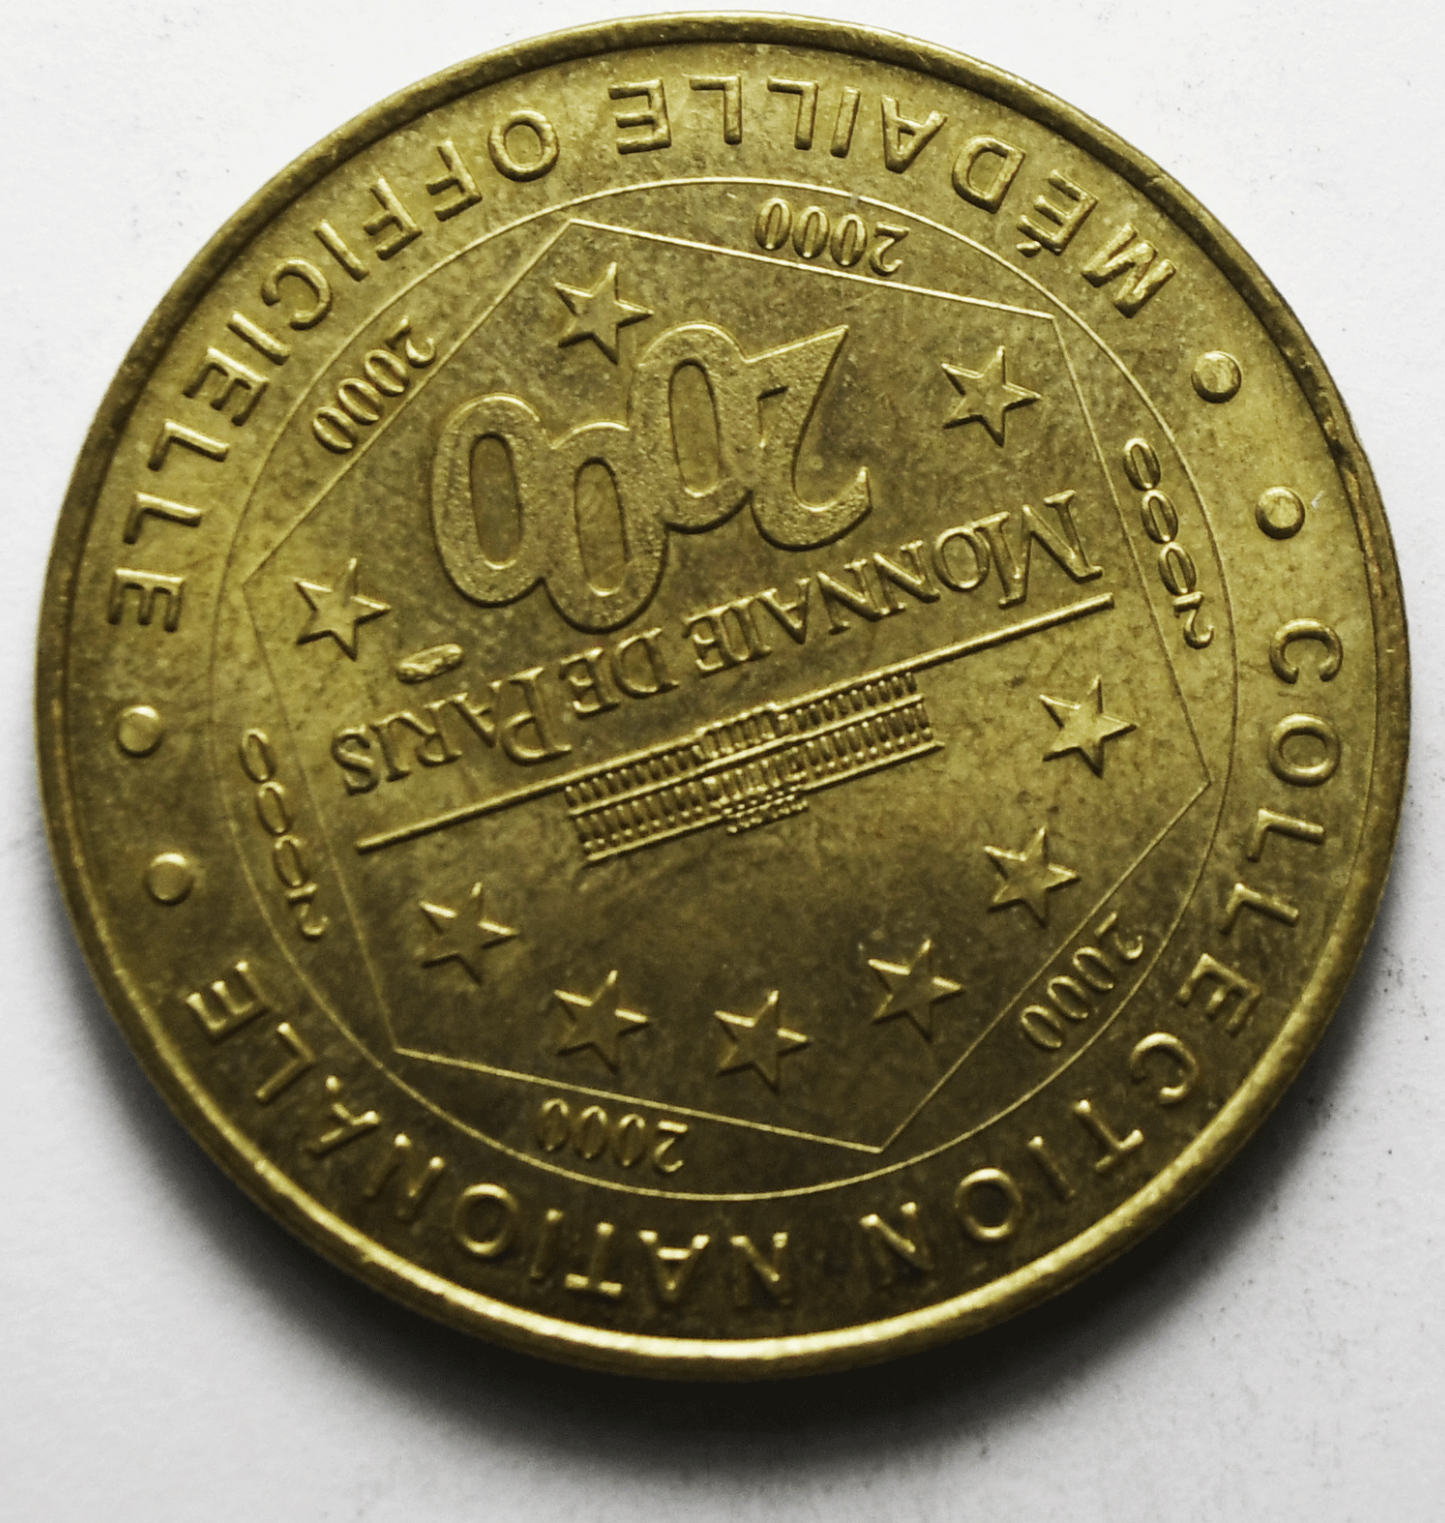 2000 Monnaie De Paris Eiffel Tower Official Medal Souvenir 33mm